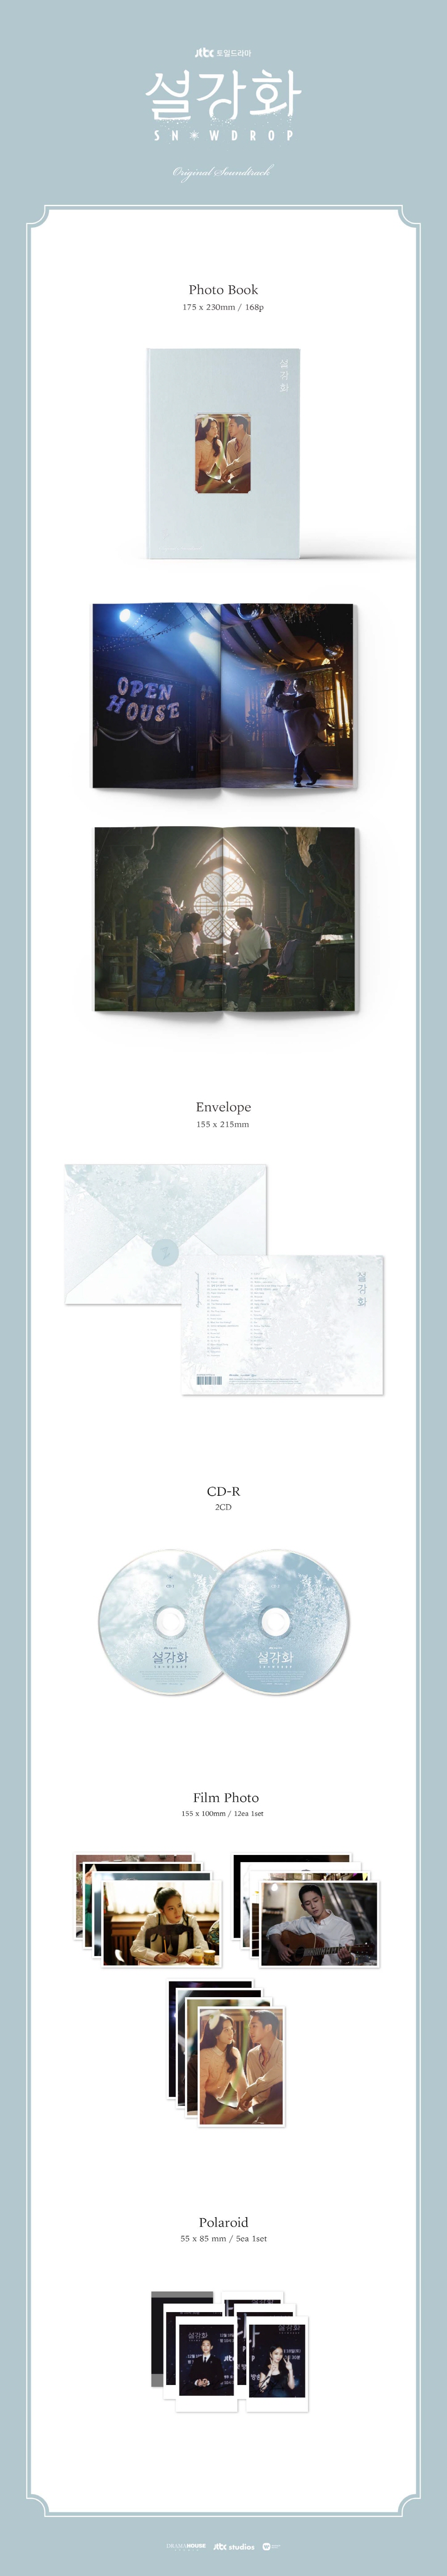 [ Snowdrop ] OST (2CD) Album - JTBC Drama album ost ostalbum snowdrop snowdropalbum snowdropost snowdropostalbum snowdropcd snowdropostcd